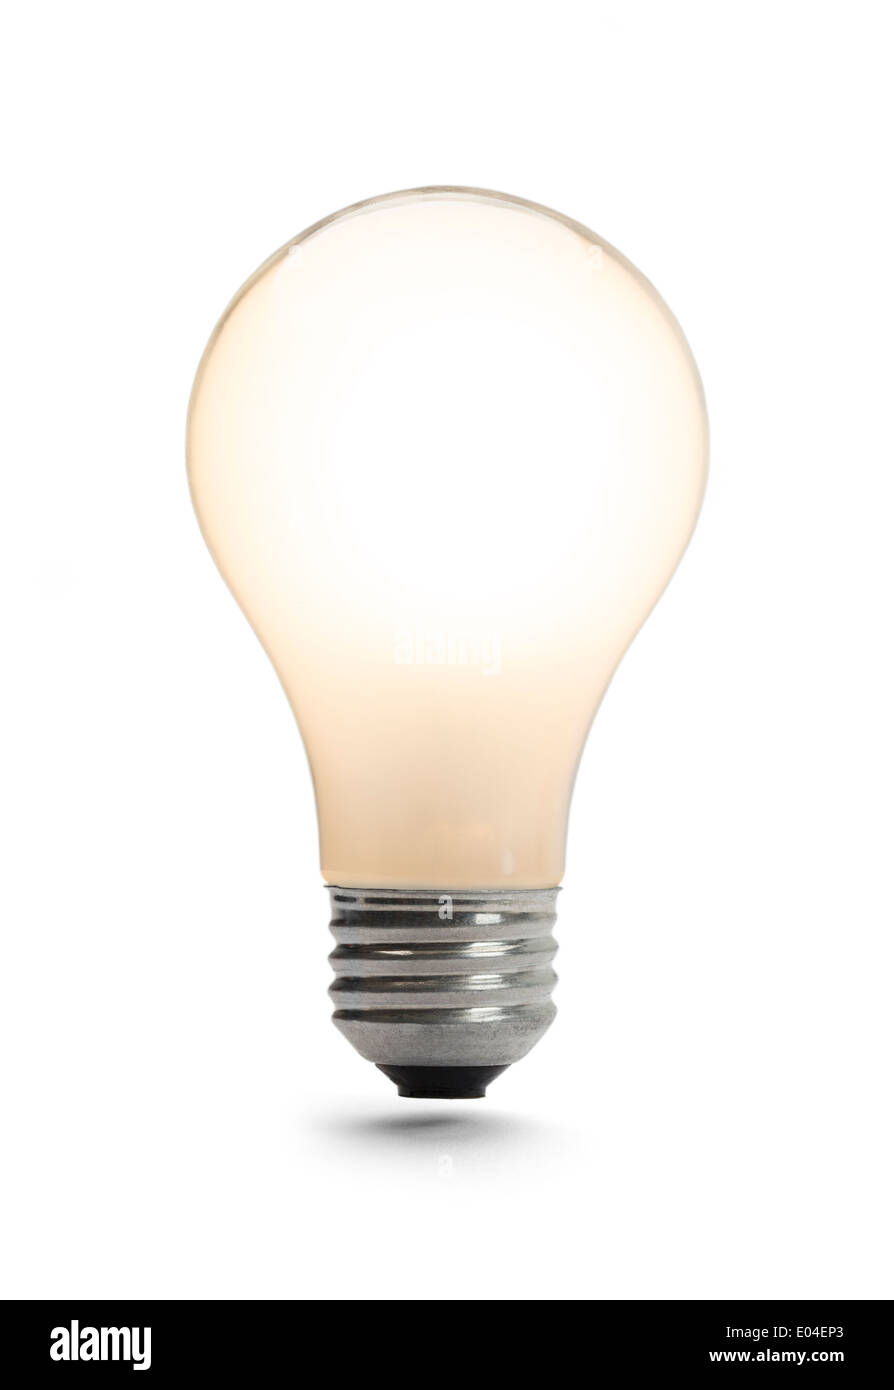 L'ampoule classique illuminé isolé sur un fond blanc. Banque D'Images